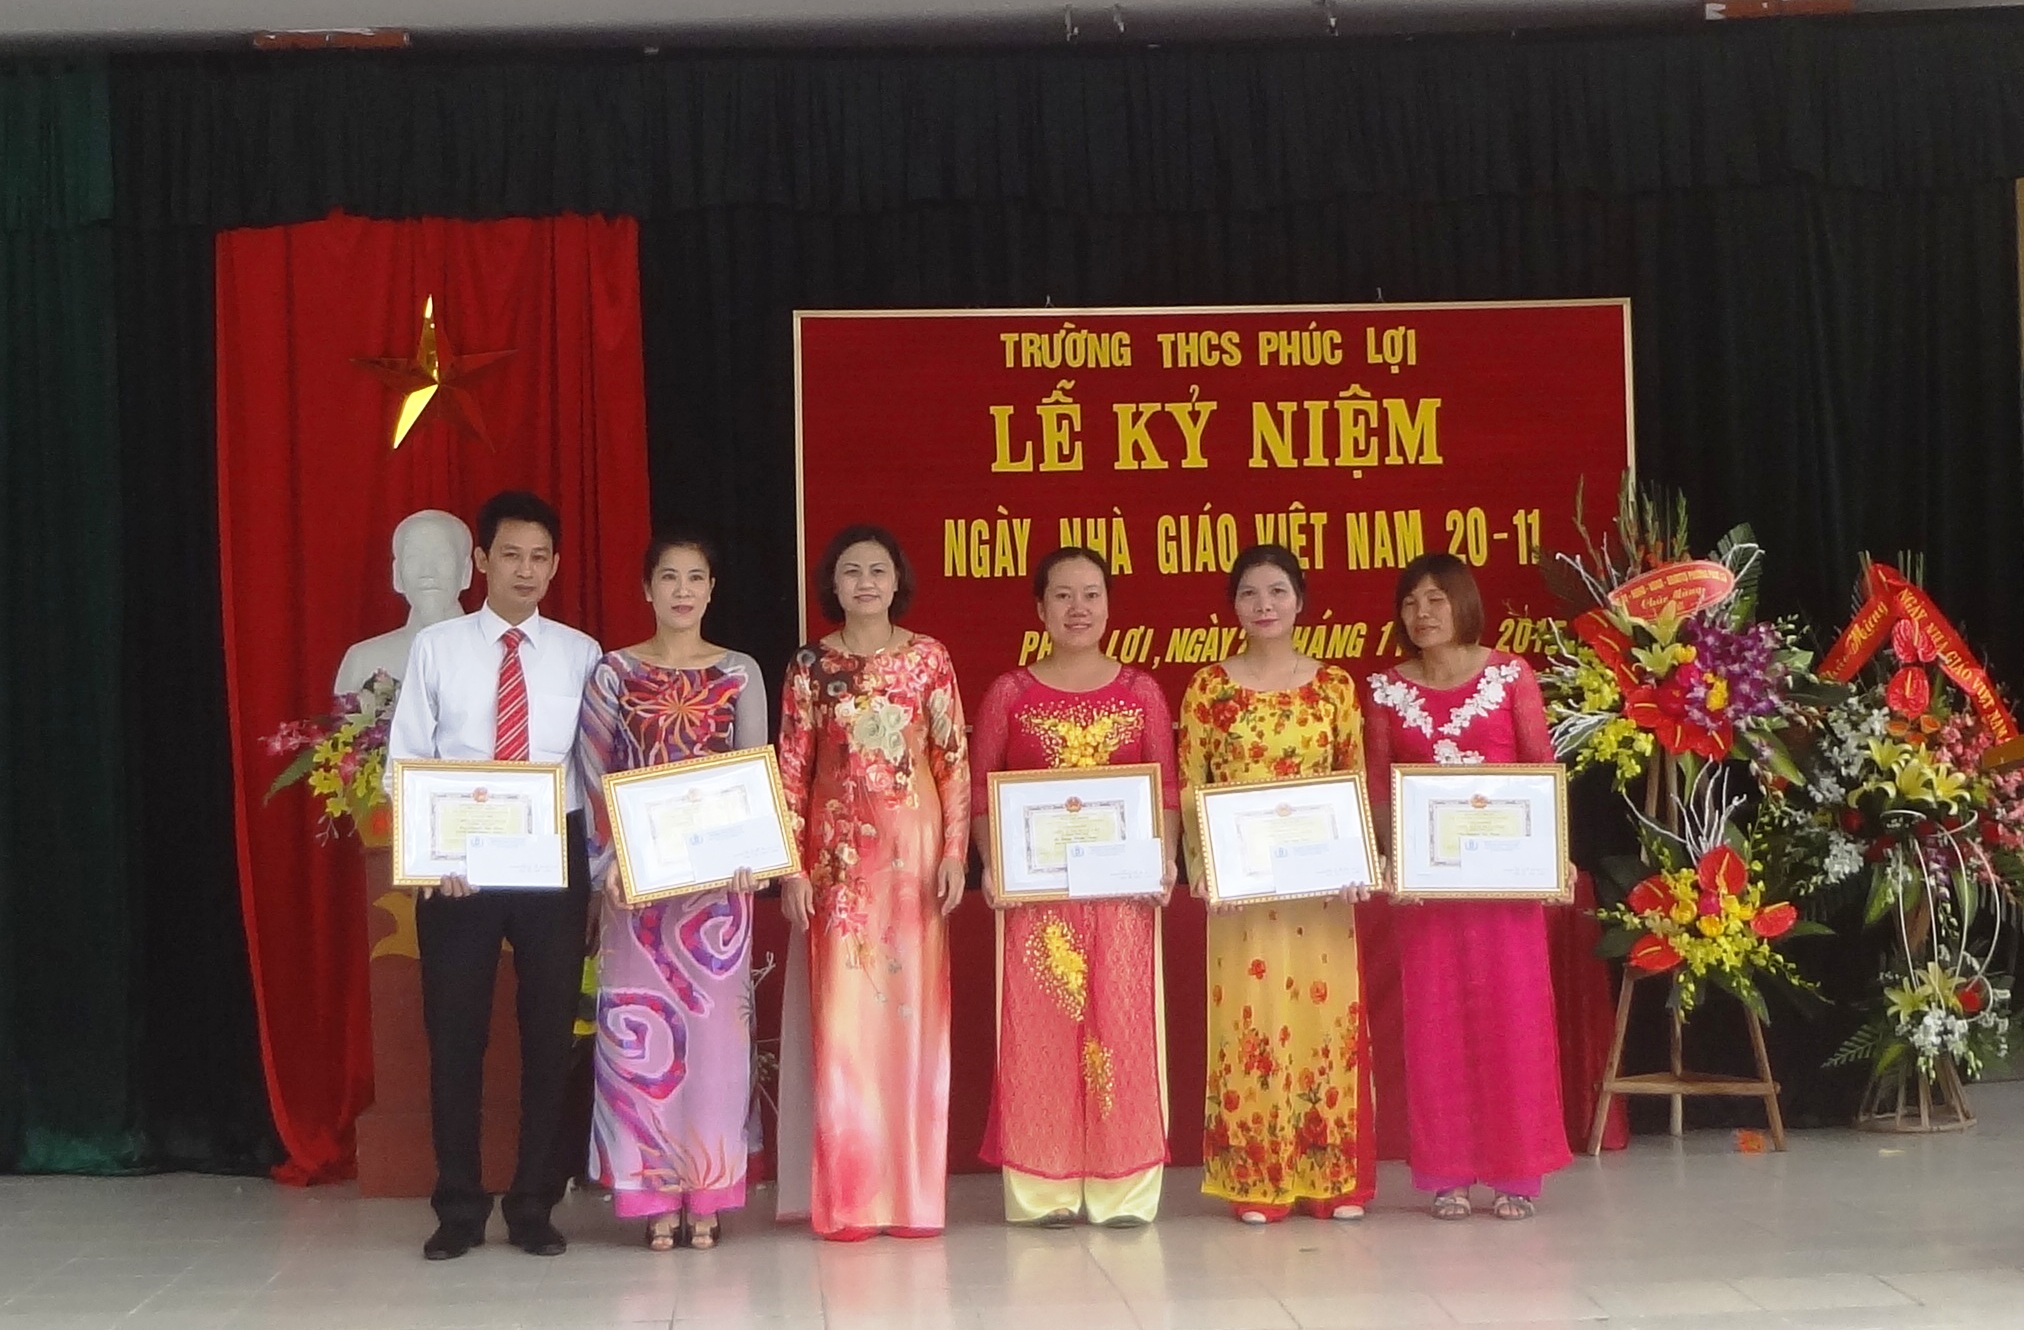 Lễ kỉ niệm ngày nhà giáo Viêt Nam